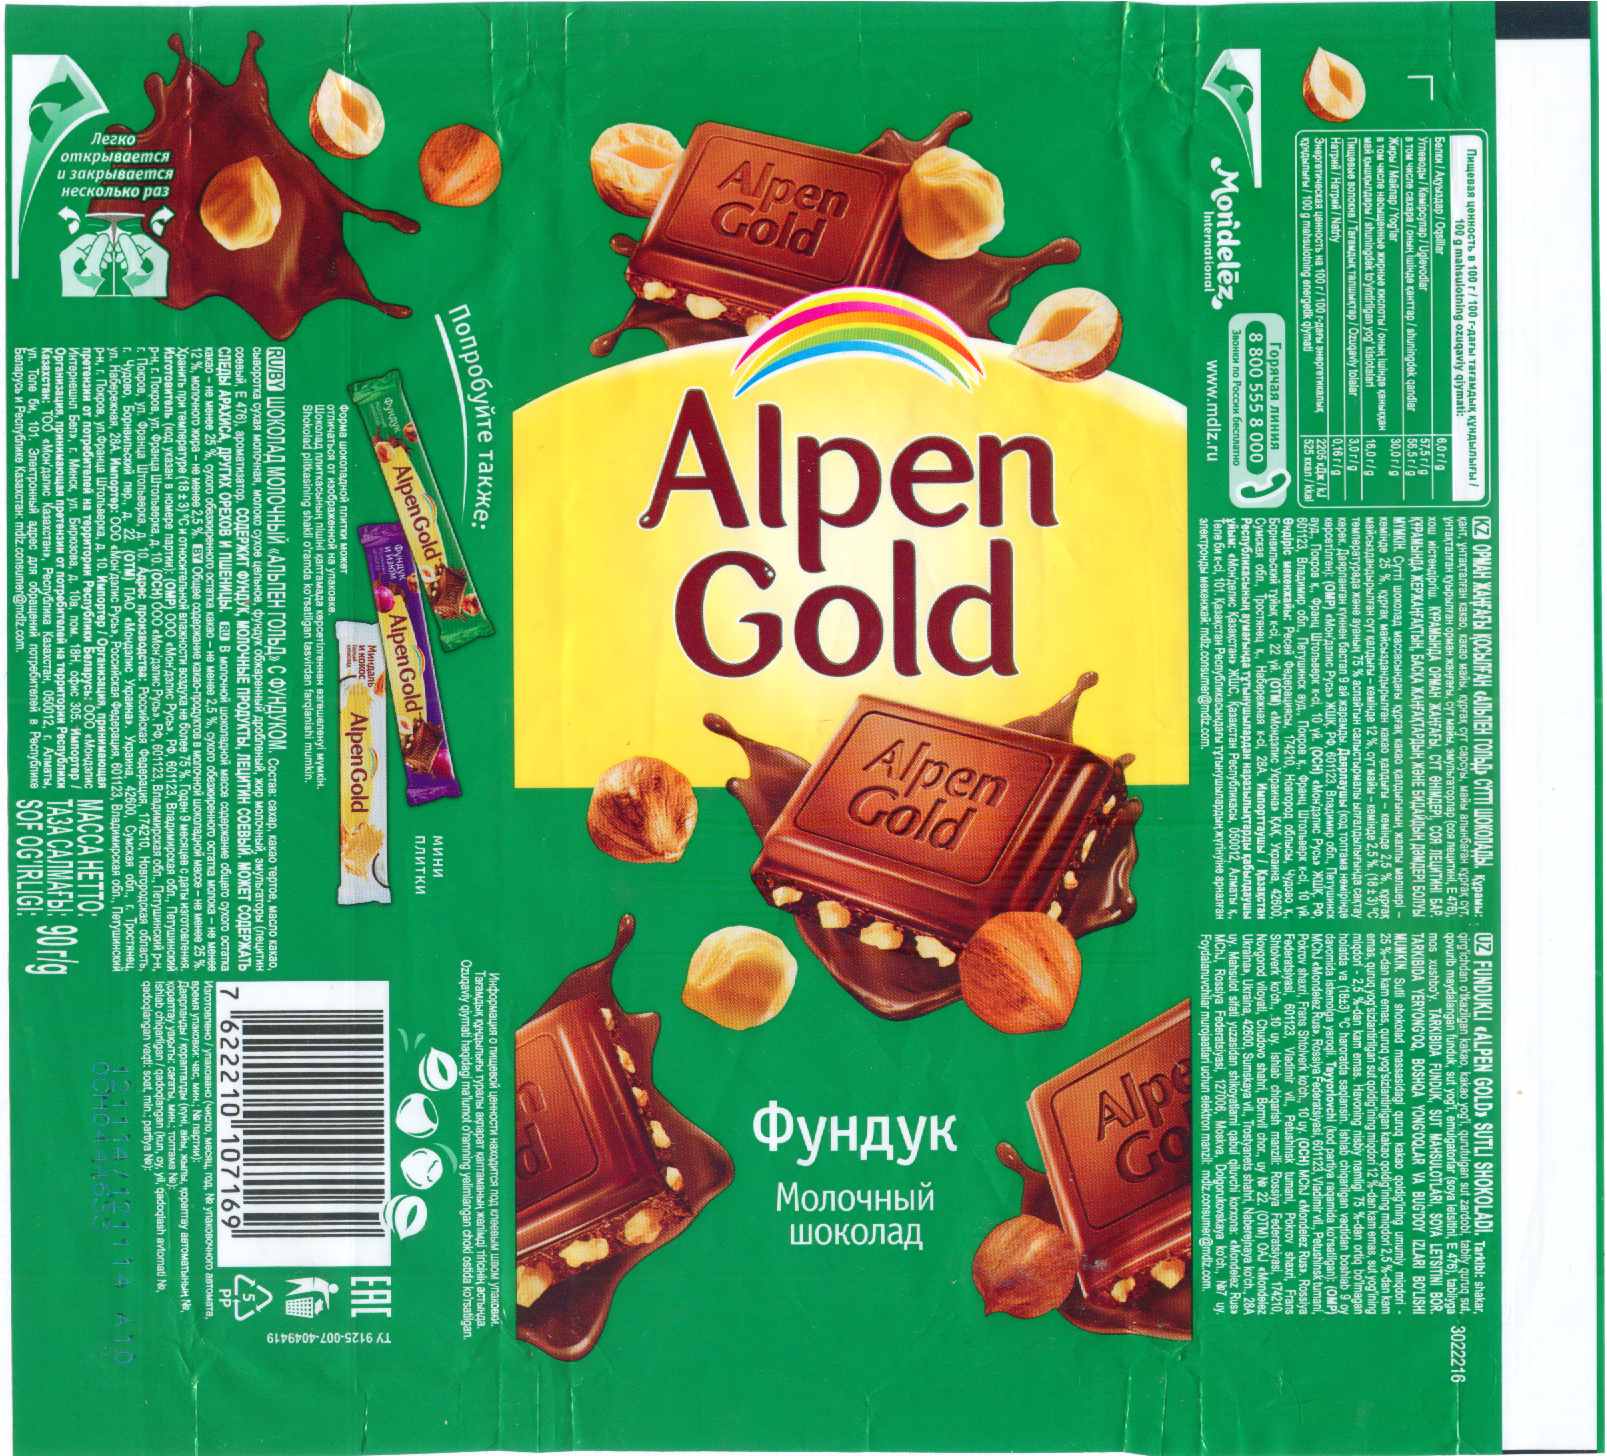 Упаковка шоколада Альпен Гольд